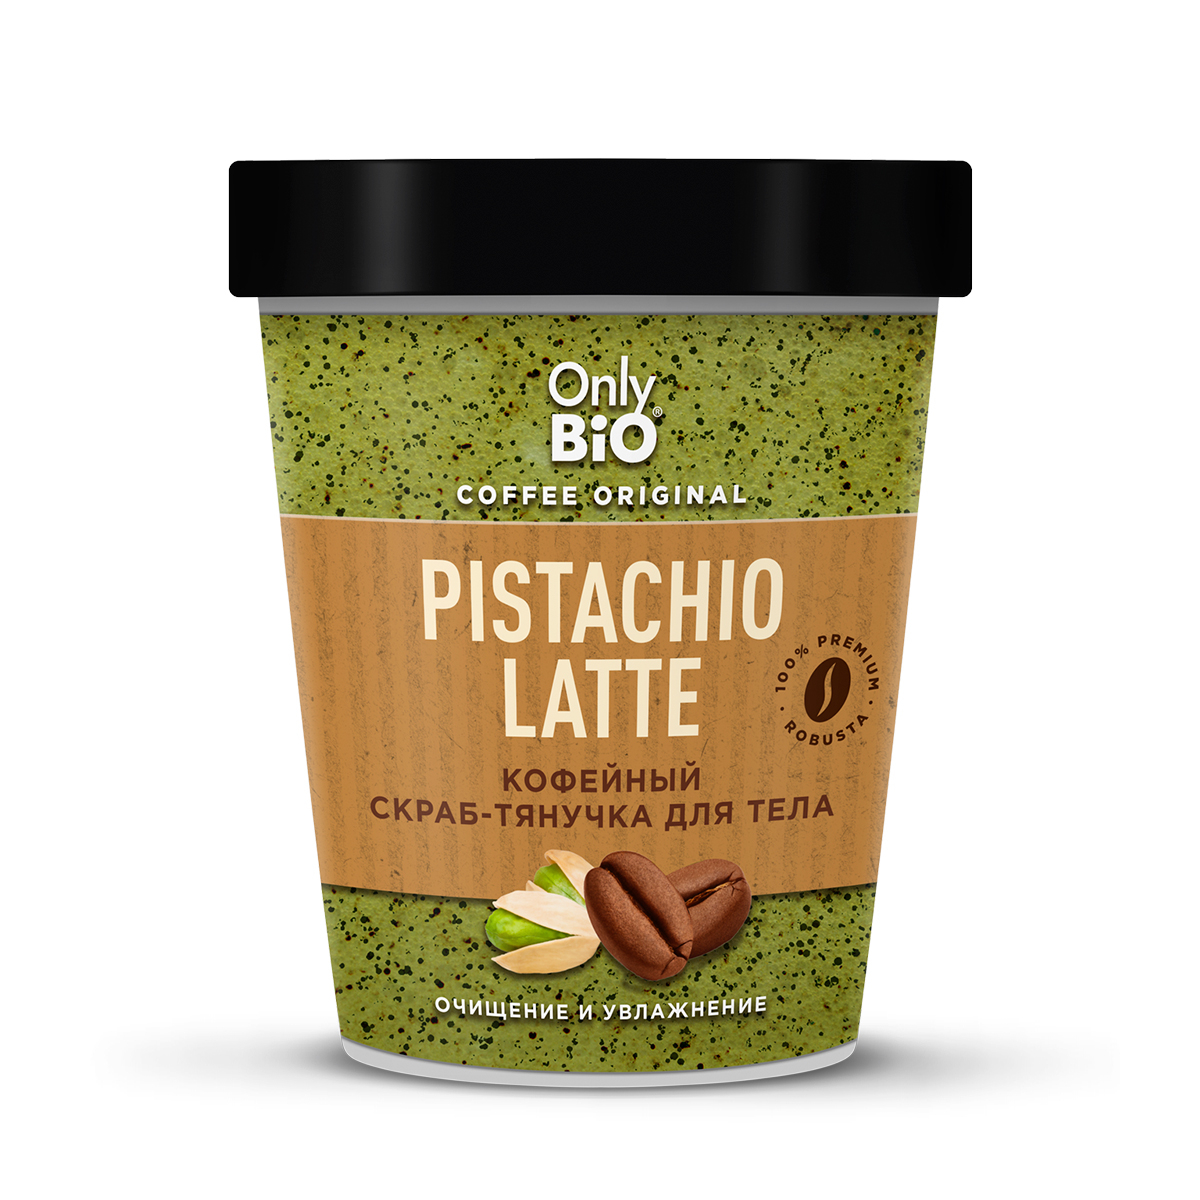 Скраб-тянучка для тела Only Bio Coffee Original Pistachio Latte кофейный, 230 мл kopusha скраб тянучка для тела ой всё 250